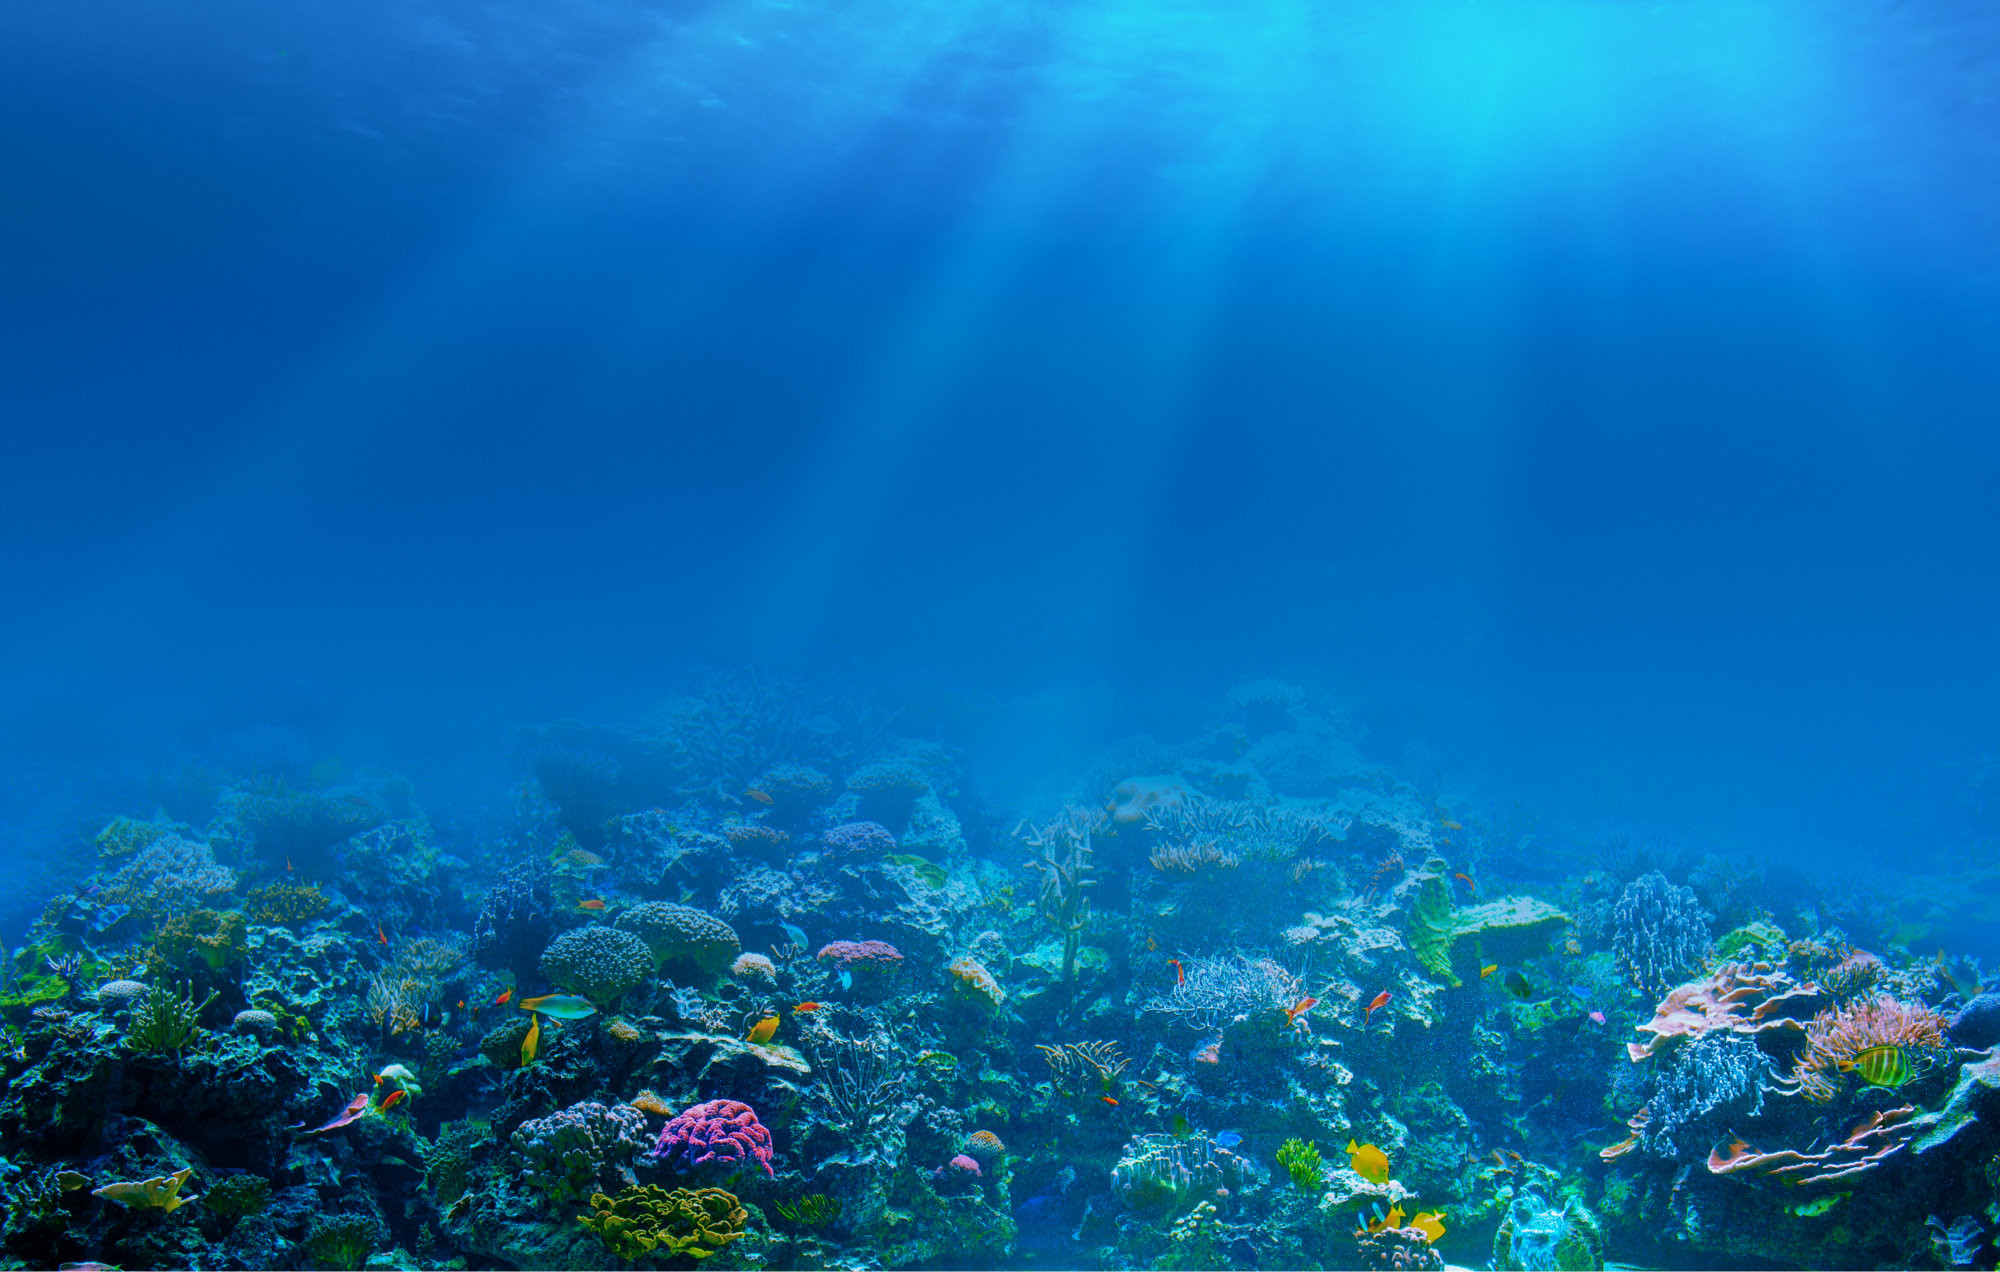 2000x1272 Underwater coral reef background